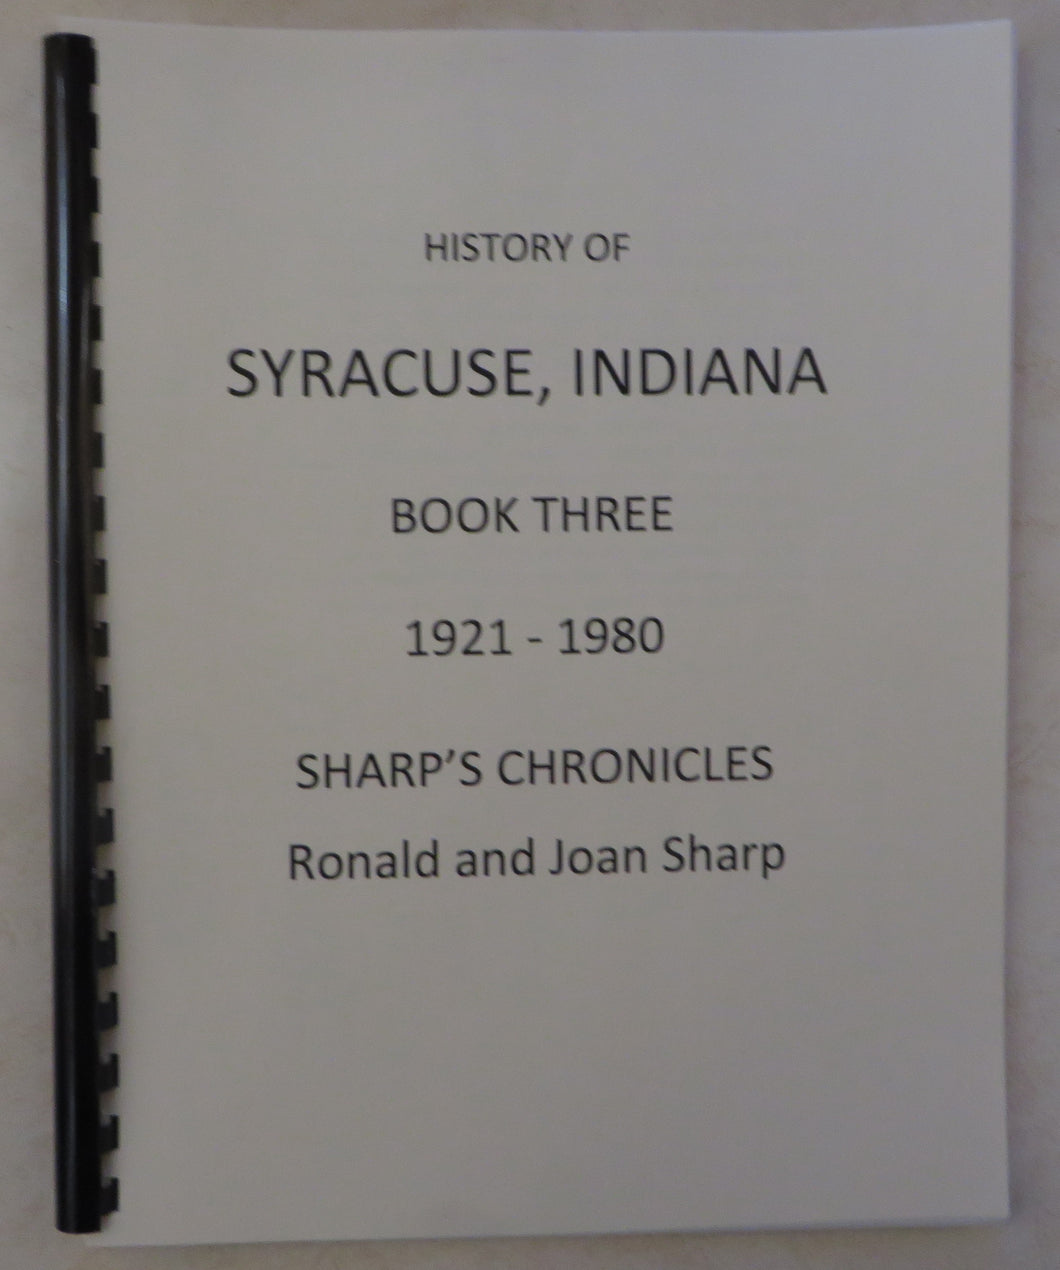 History of Syracuse, Indiana - Book Three - 1921-1980